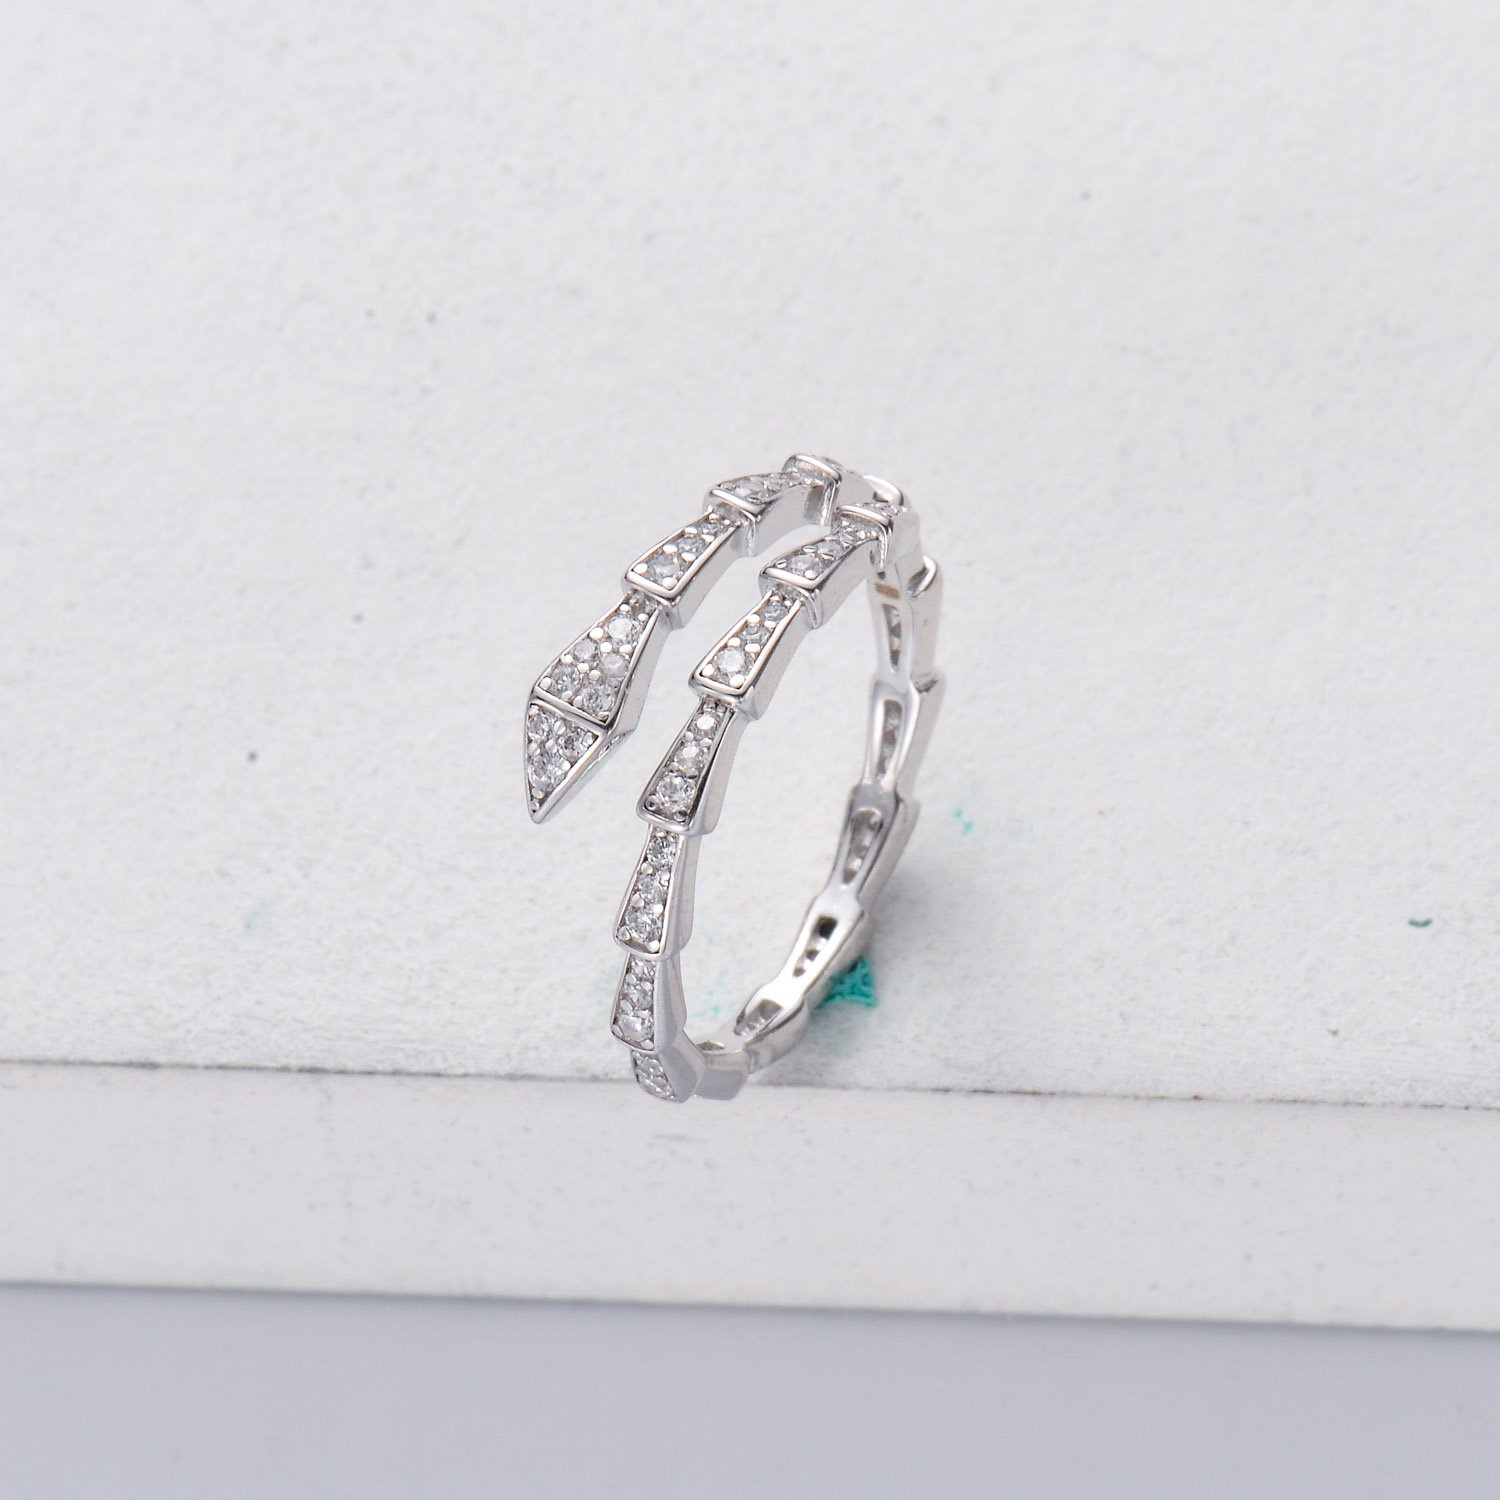 Anillos aesthetic de Plata 925 ajustable con Diamantes triturados moda